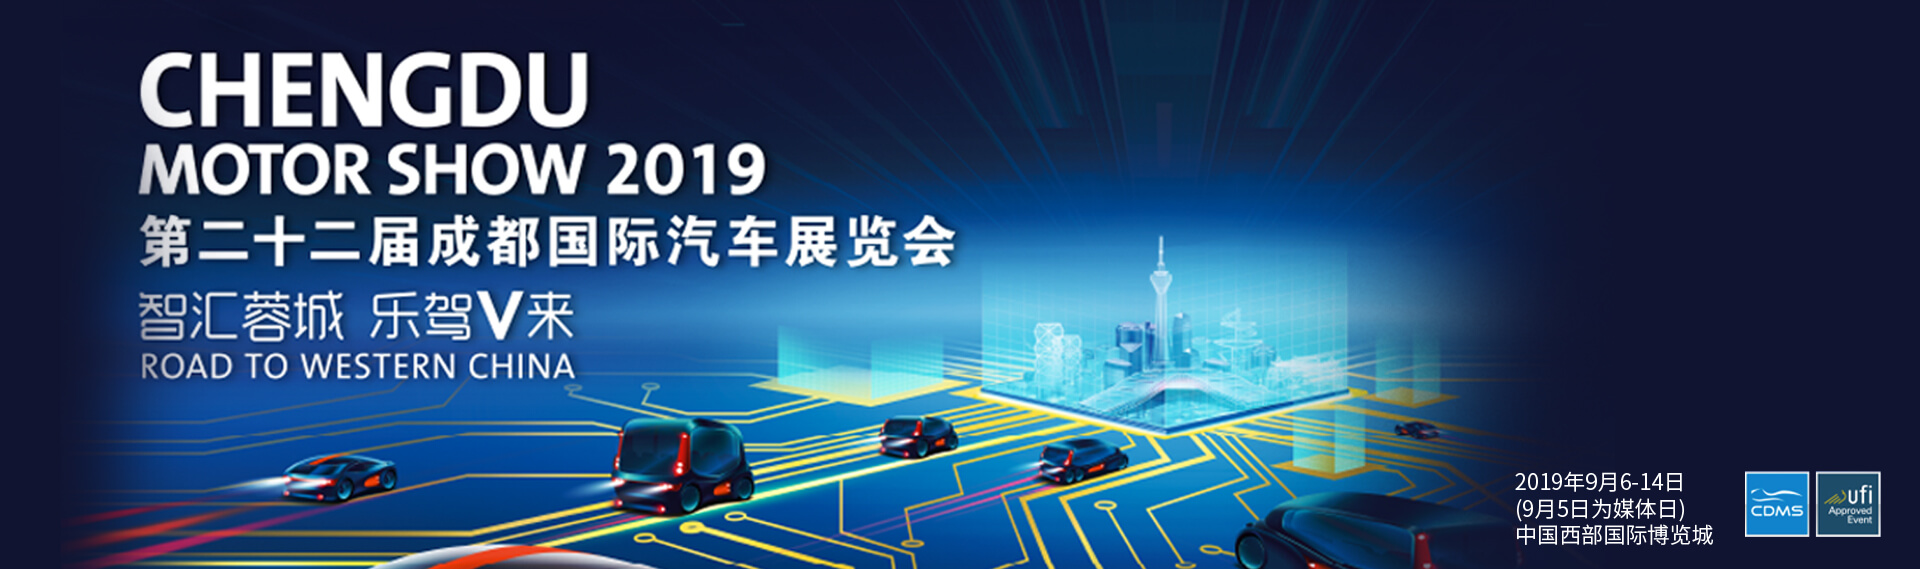 南京依维柯展台 第二十二届成都国际汽车展览会